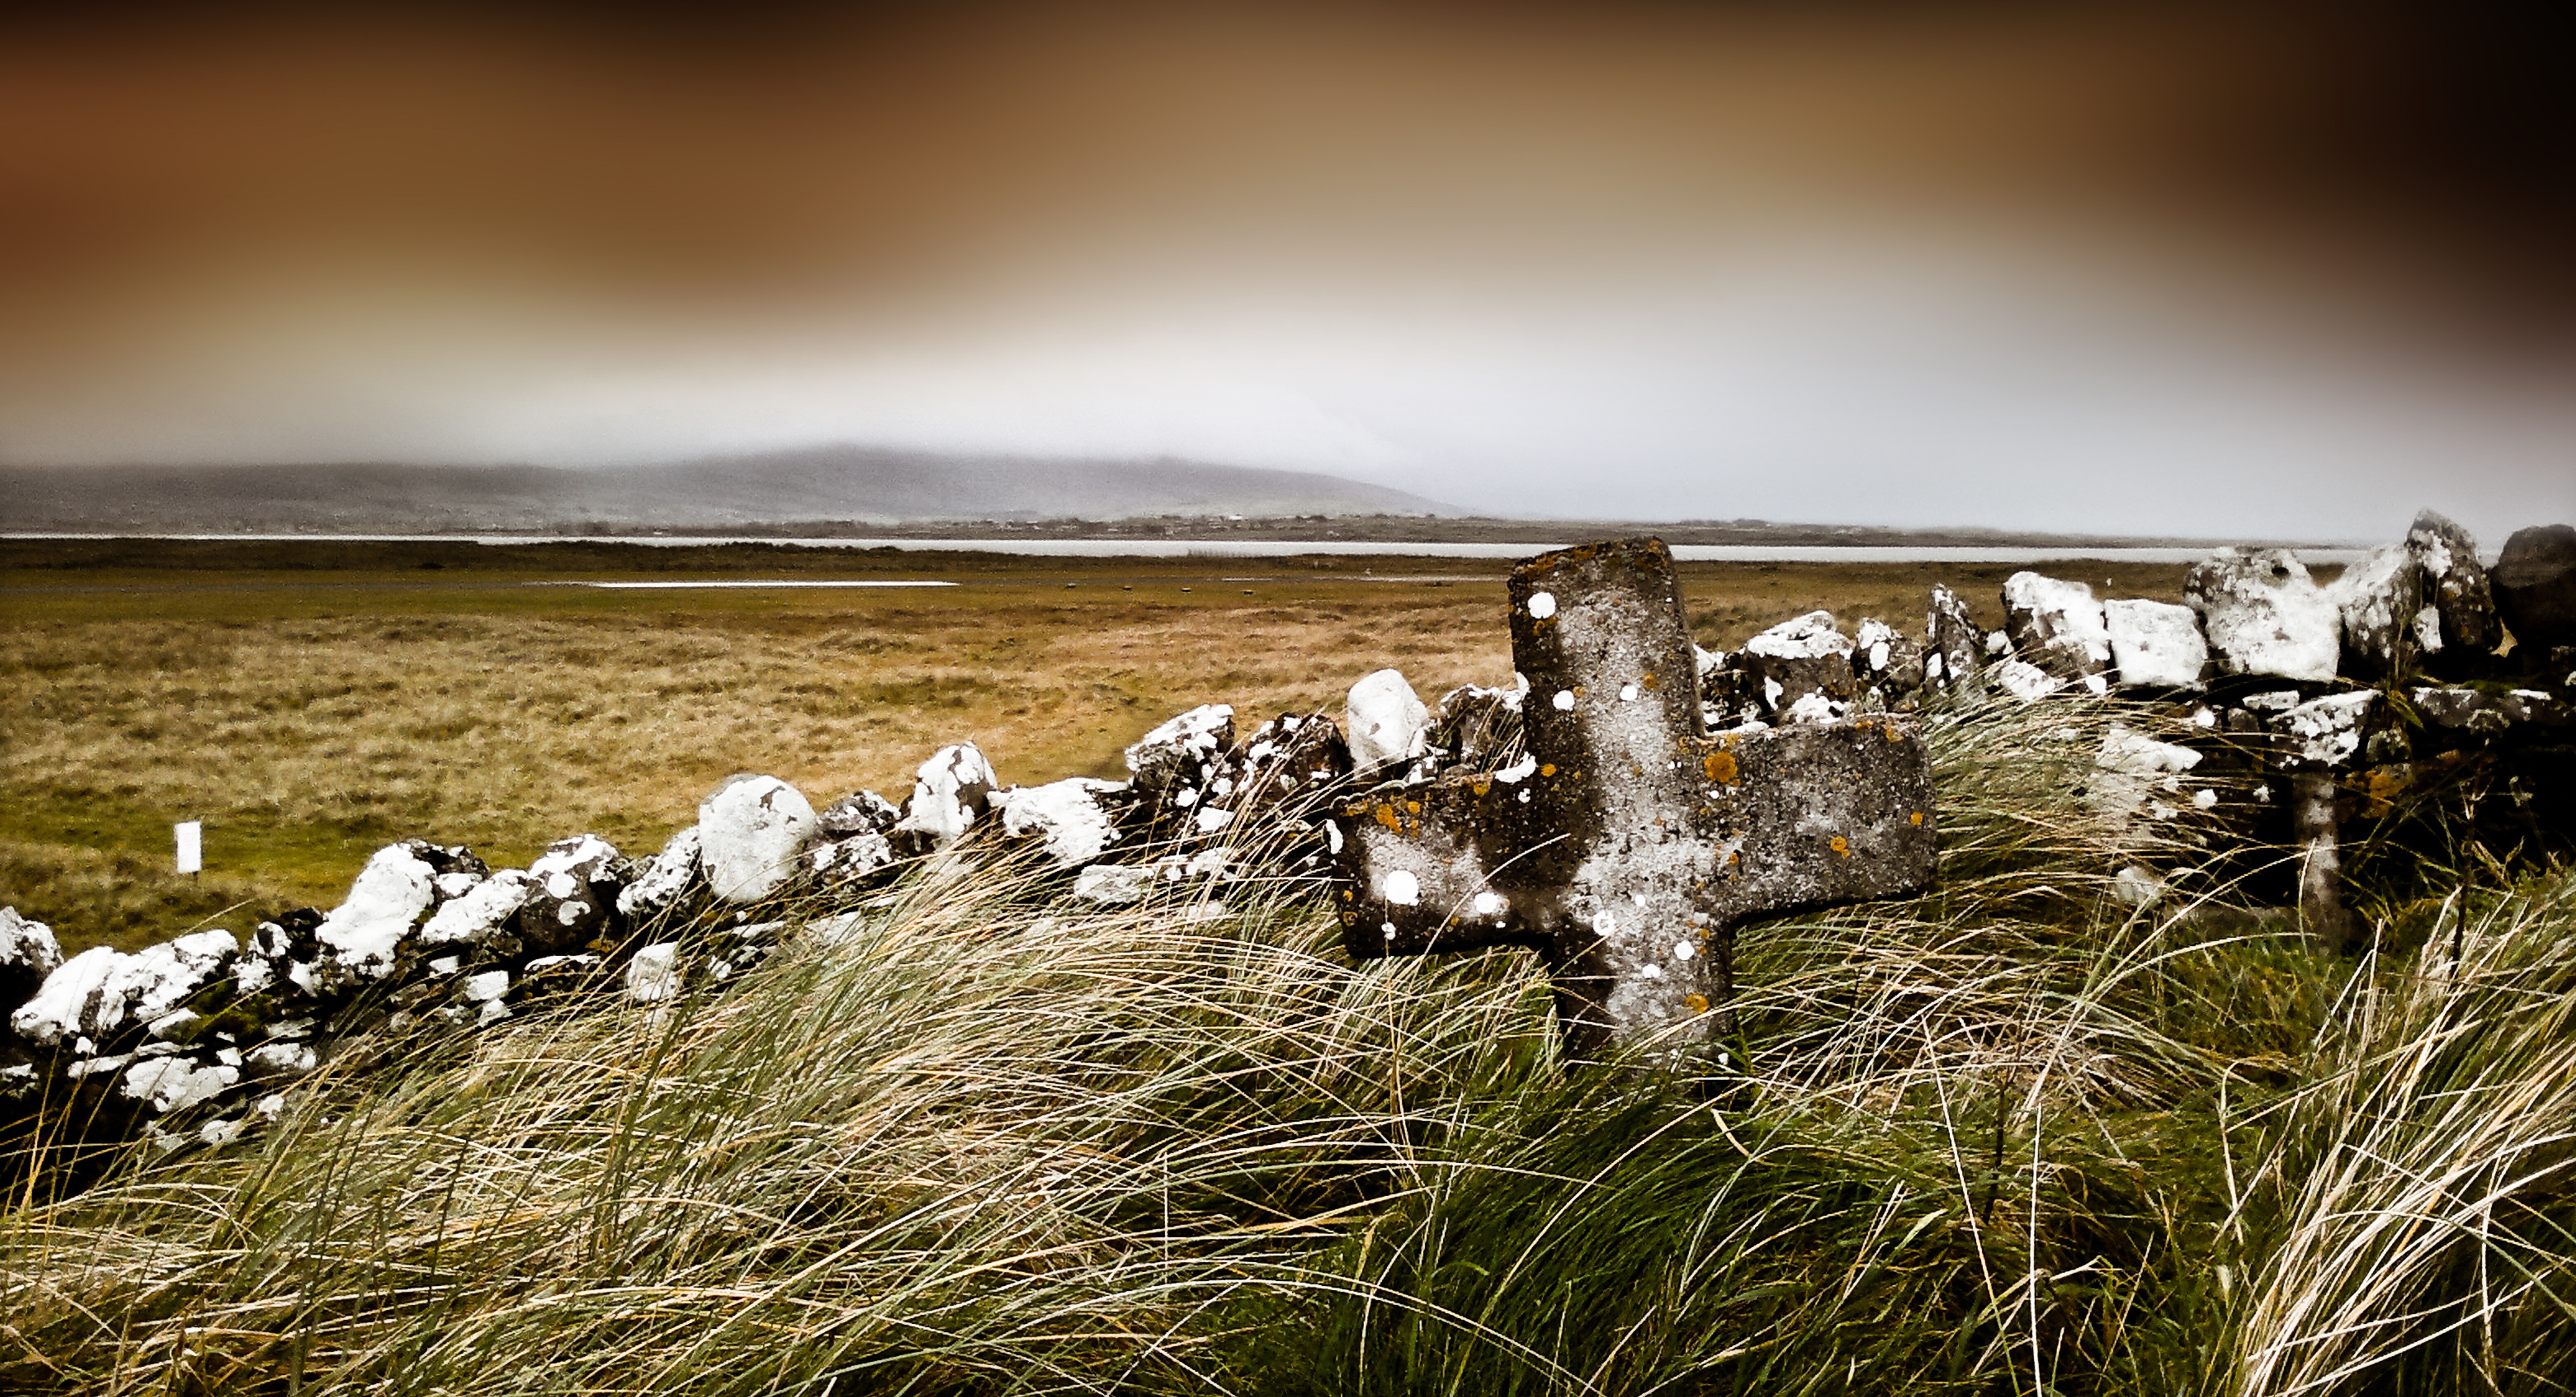 Christianity, Ireland, Irish, rural scene, grass